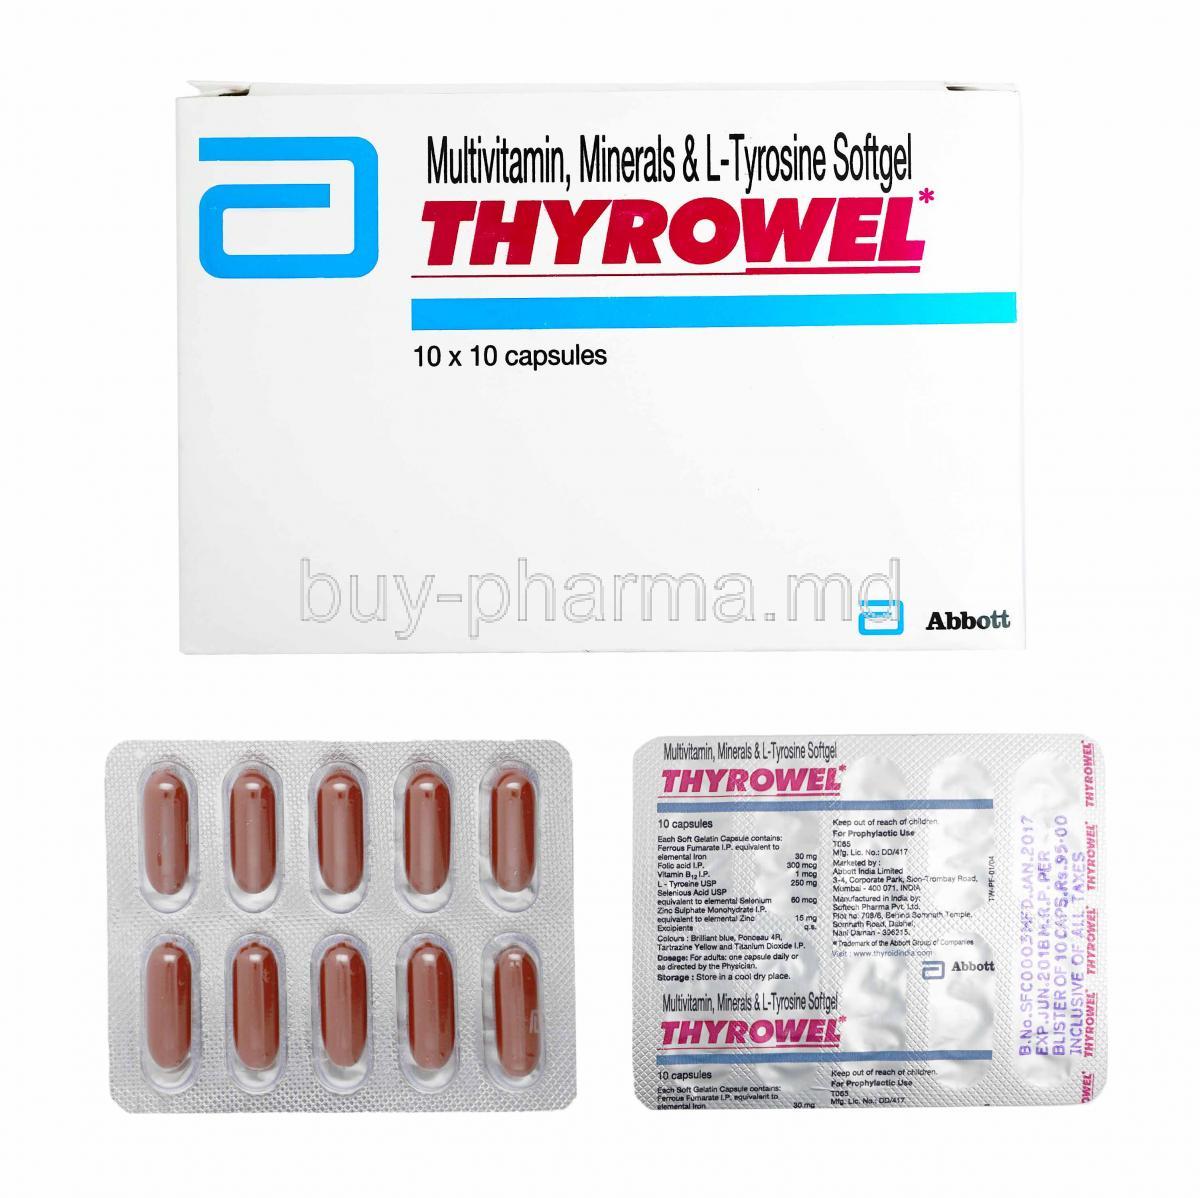 Thyrowel, box and capsules